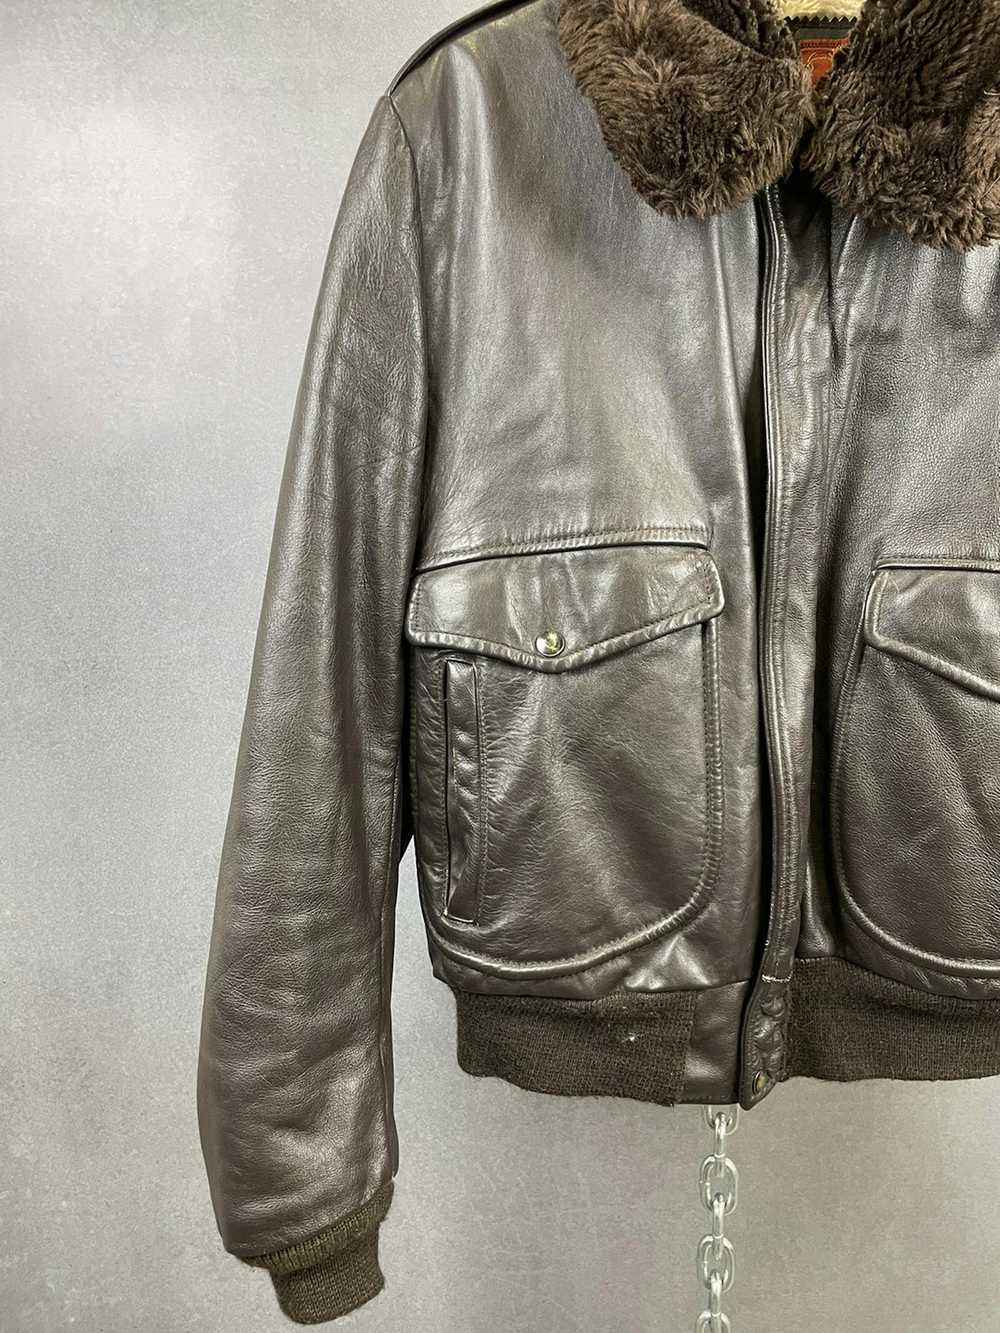 Vintage Vintage 60s Leather Flight Jacket - image 5